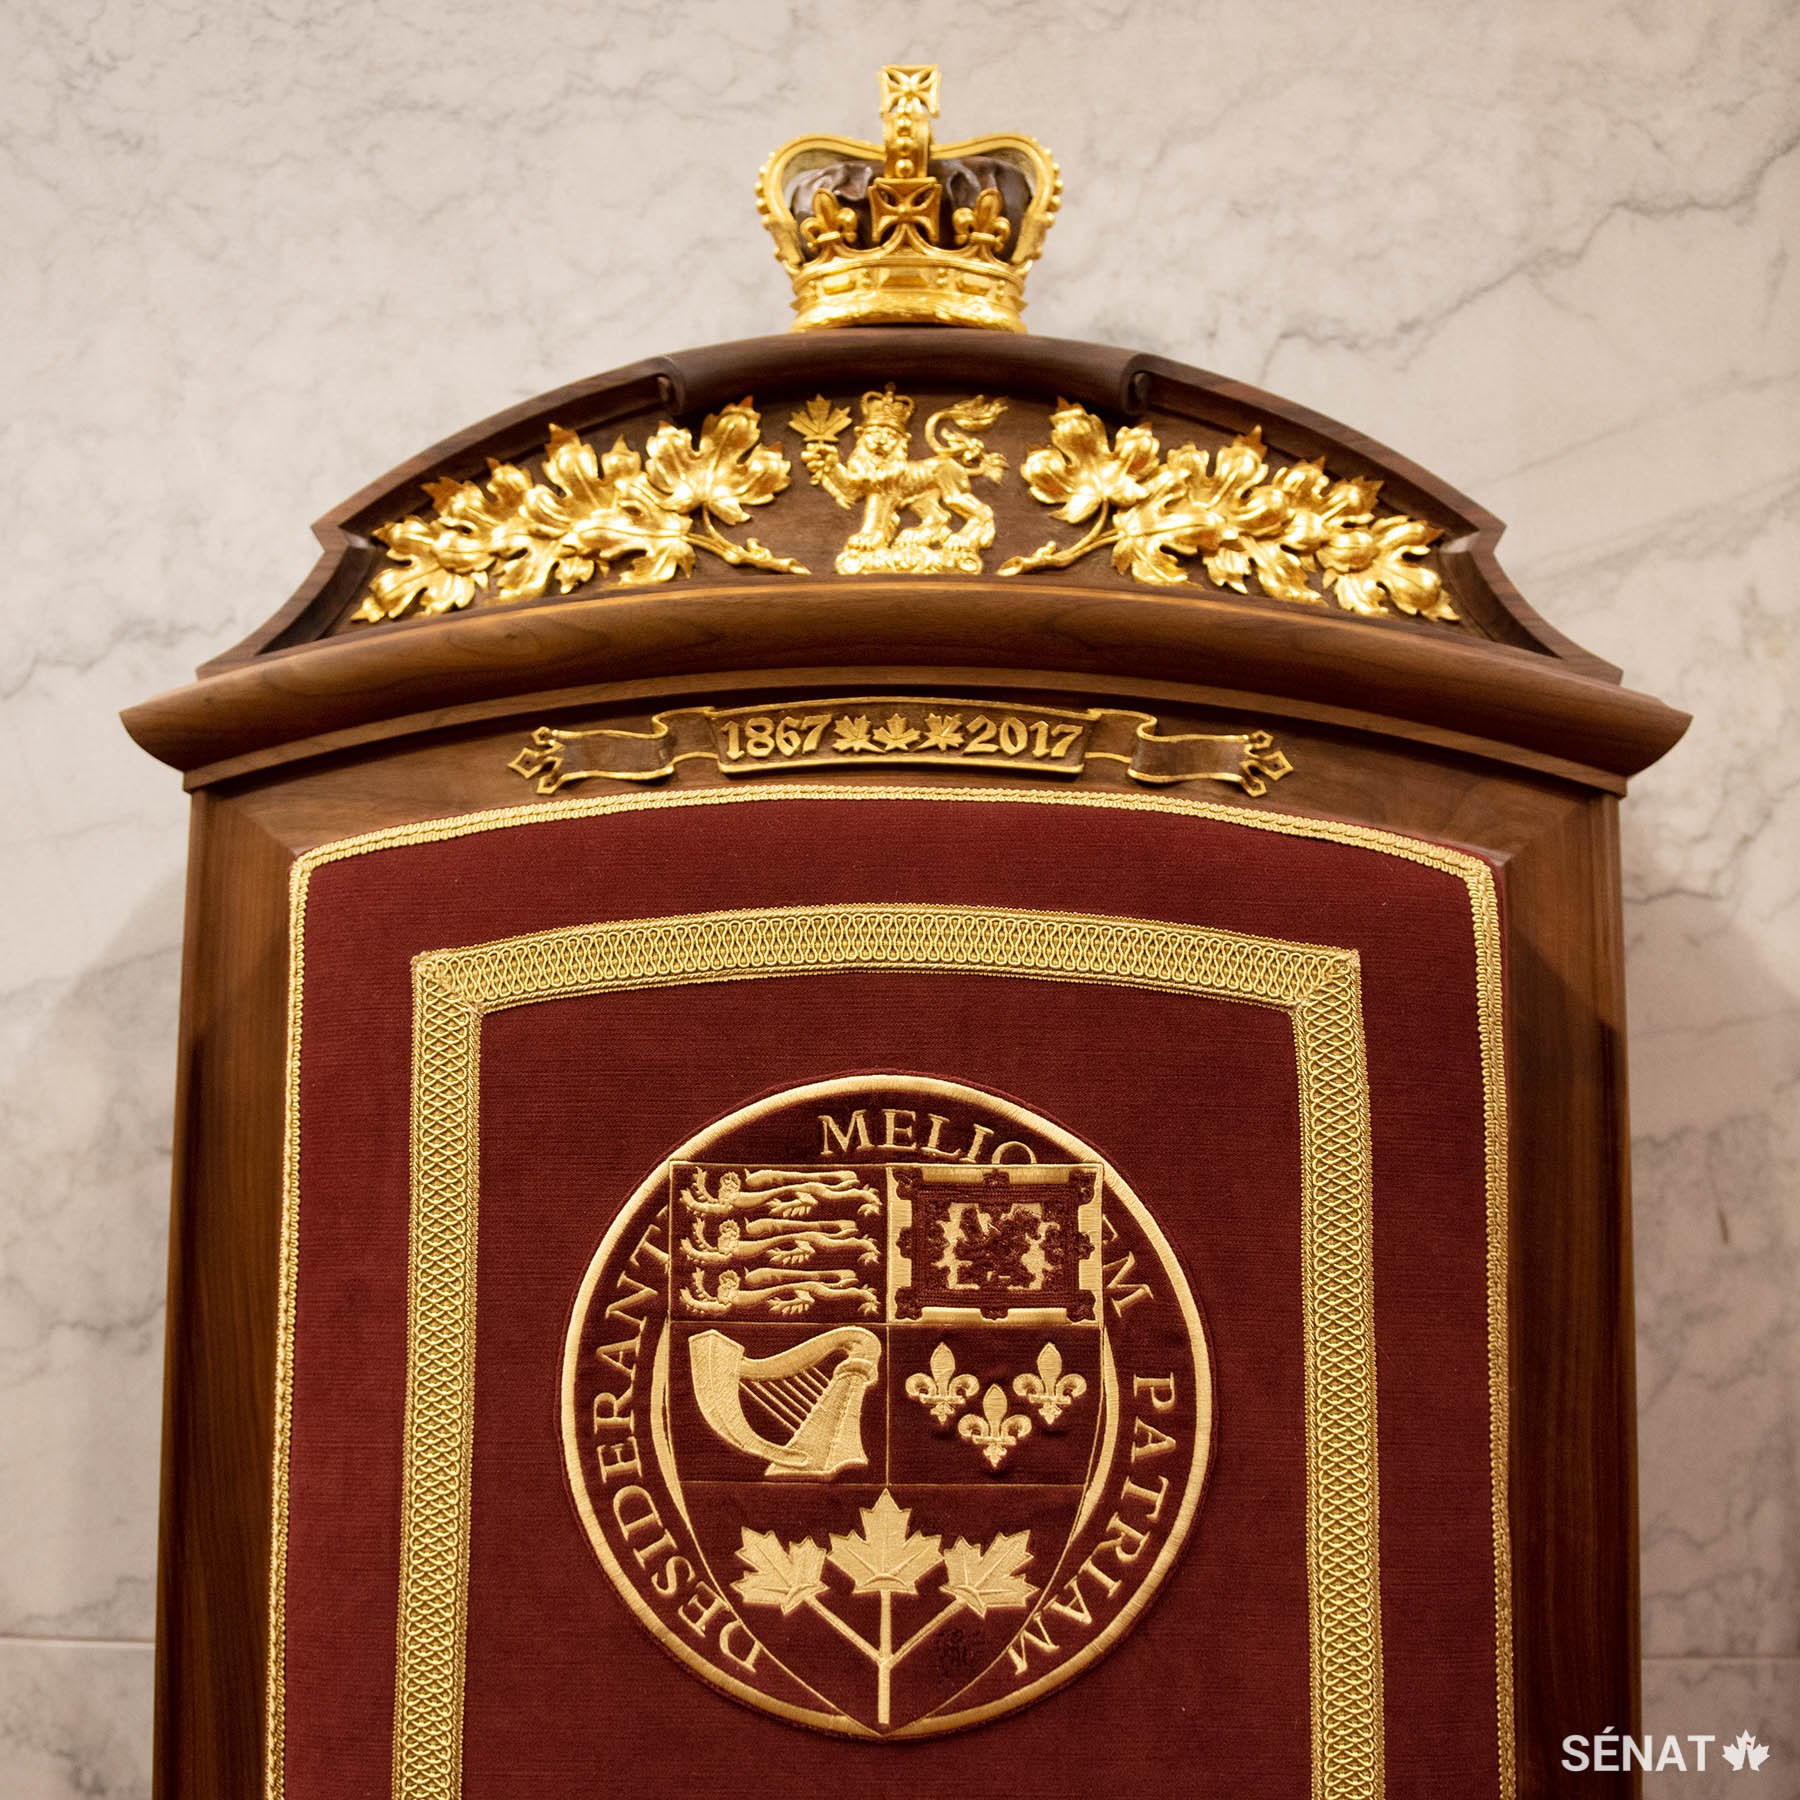 Le lion, qui fait partie des armoiries du Canada, figure sur la tête du trône du consort. L’écu des armoiries du Canada est brodé dans le tissu du fauteuil. Les dates 1867-2017, gravées sur le dossier du fauteuil, soulignent le 150e anniversaire du Canada.